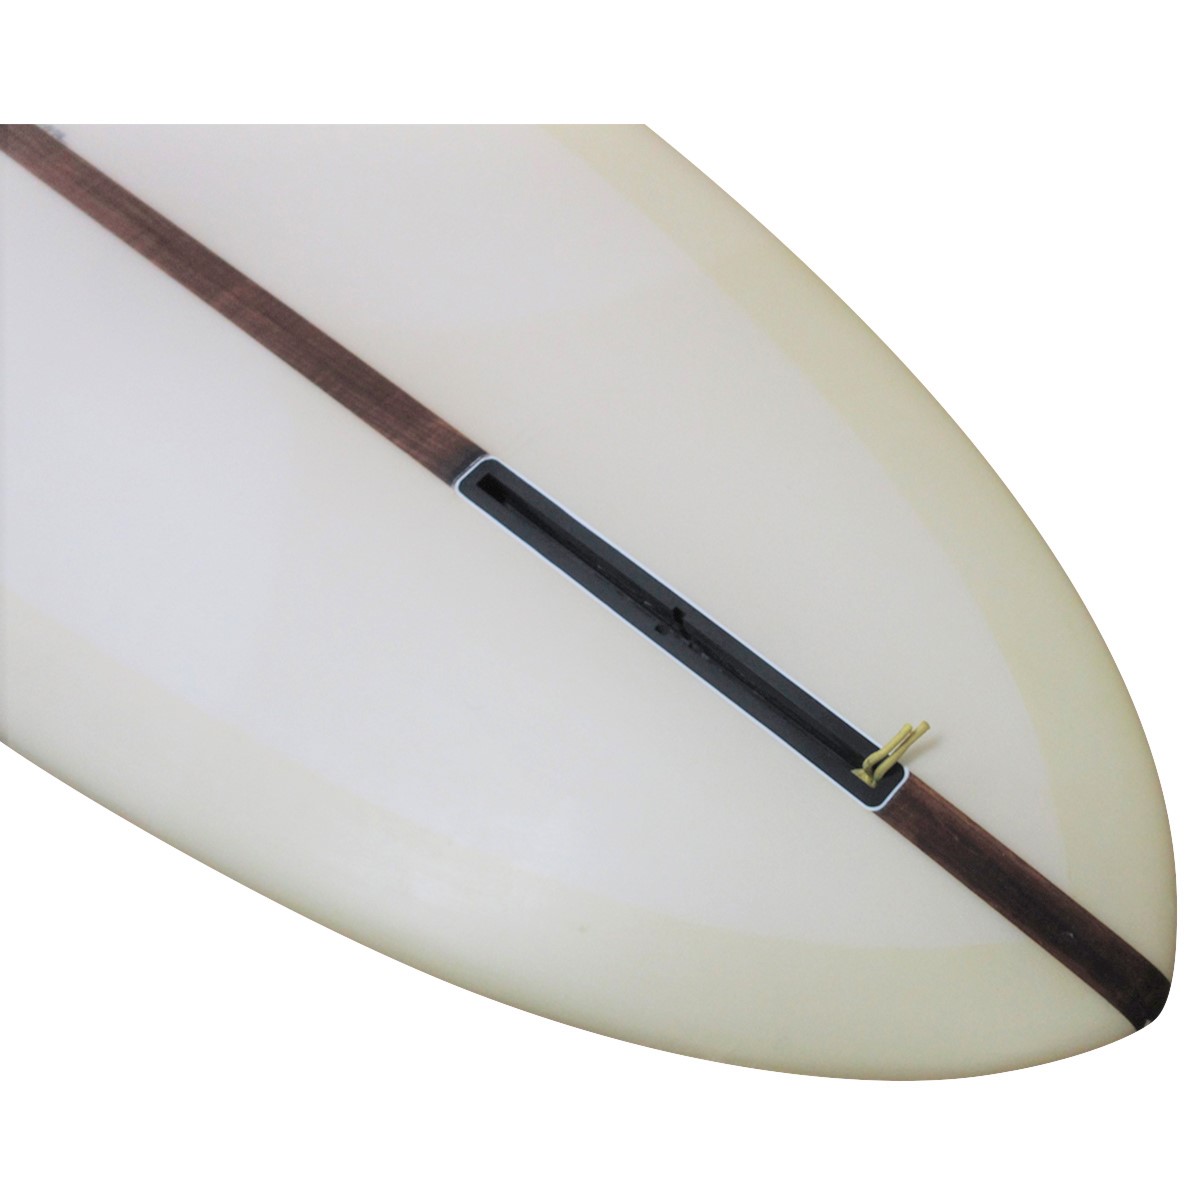 YU SURF CLASSIC / CUSTOM ROUND PIN 9`6